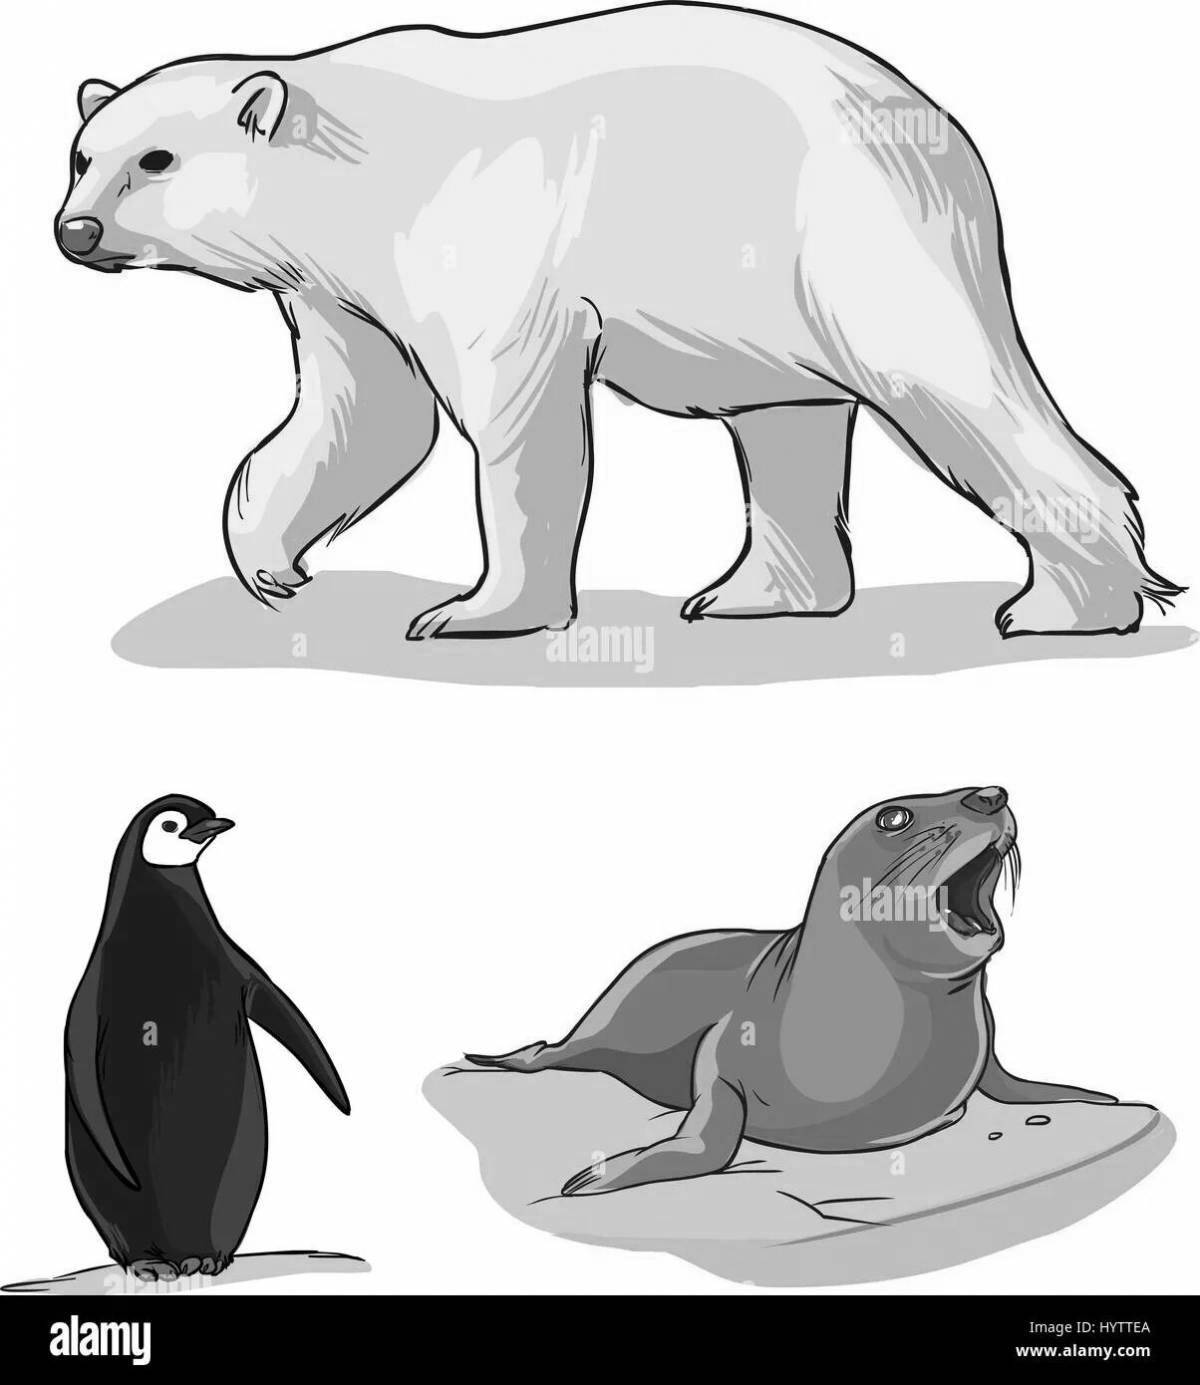 Раскраска яркий пингвин и белый медведь